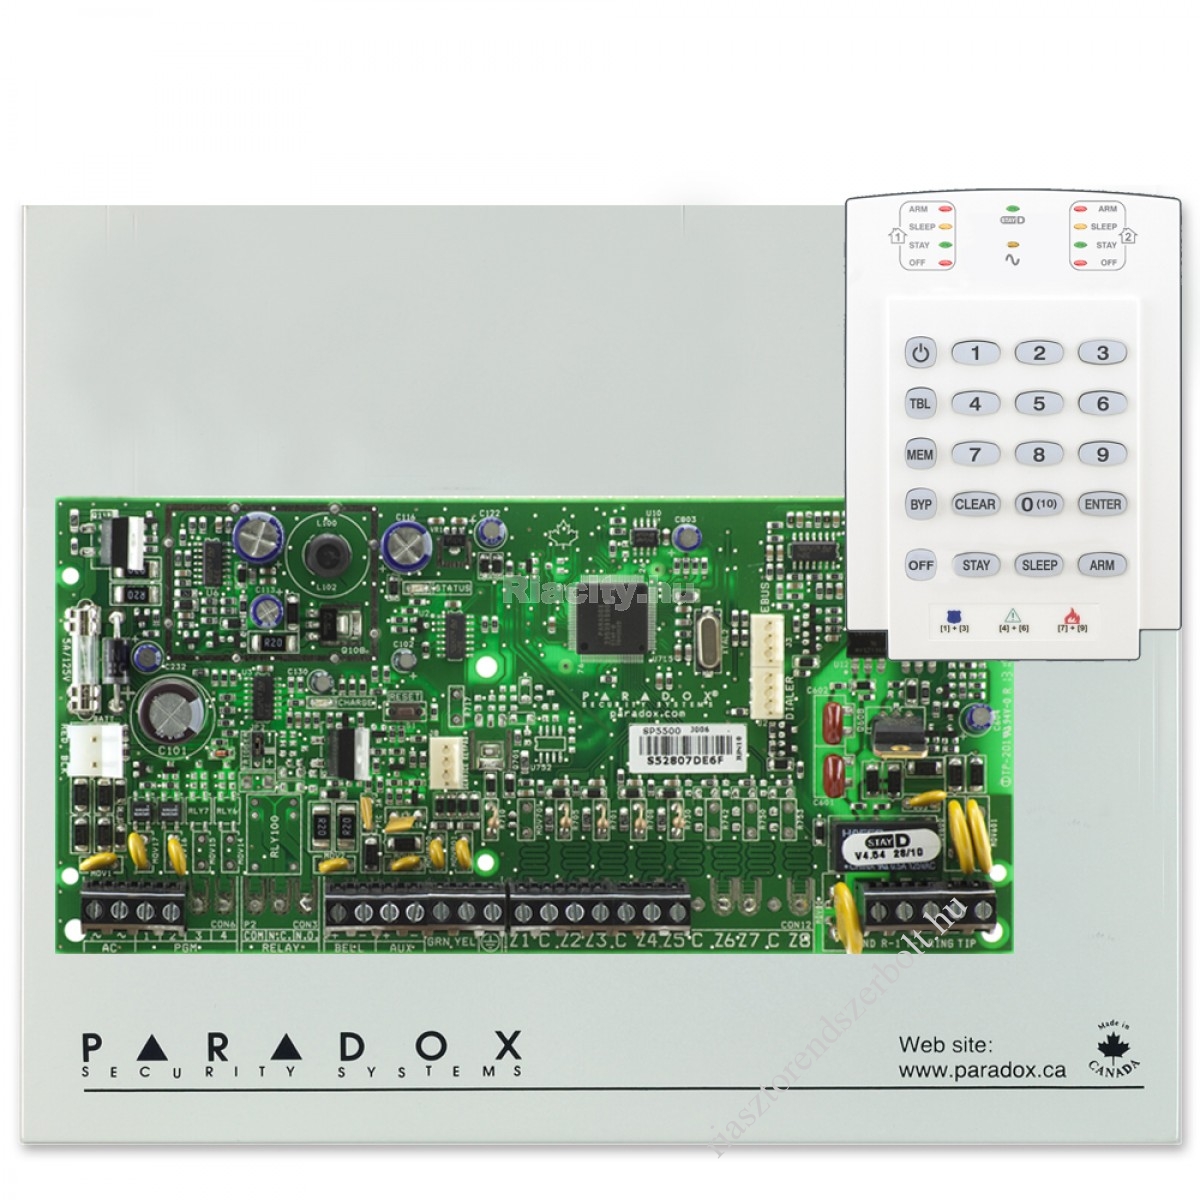 PARADOX SP4000 + K10V riasztó rendszer központ és kezelőegység